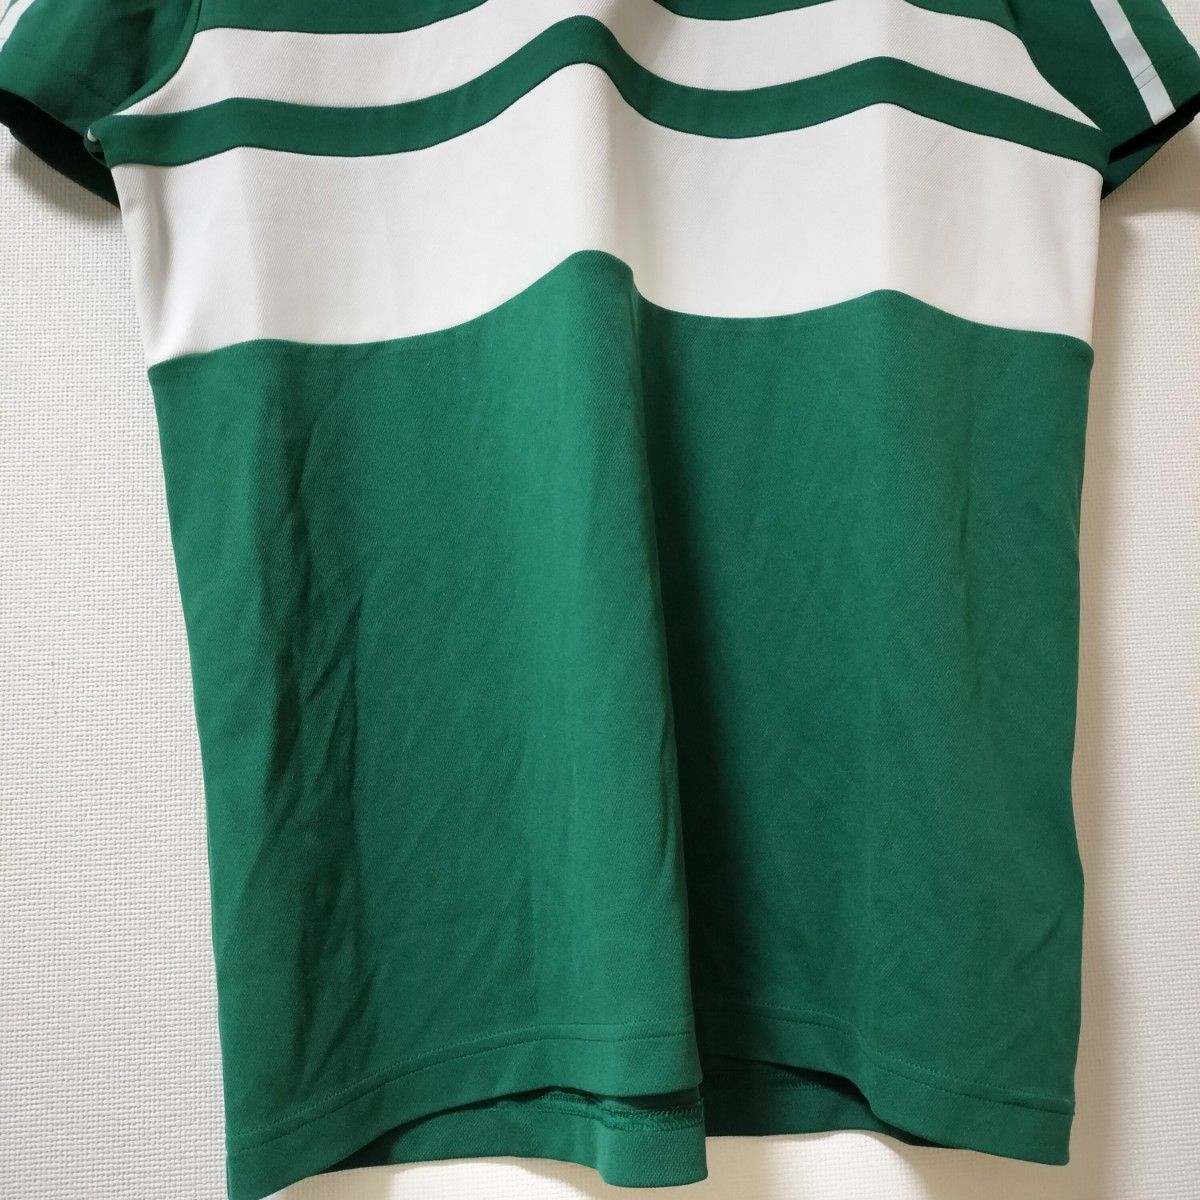 LACOSTE ポロシャツ 緑 Tシャツ ラコステ テニスウェア Size4 半袖ポロシャツ ゴルフウェア スポーツウェア